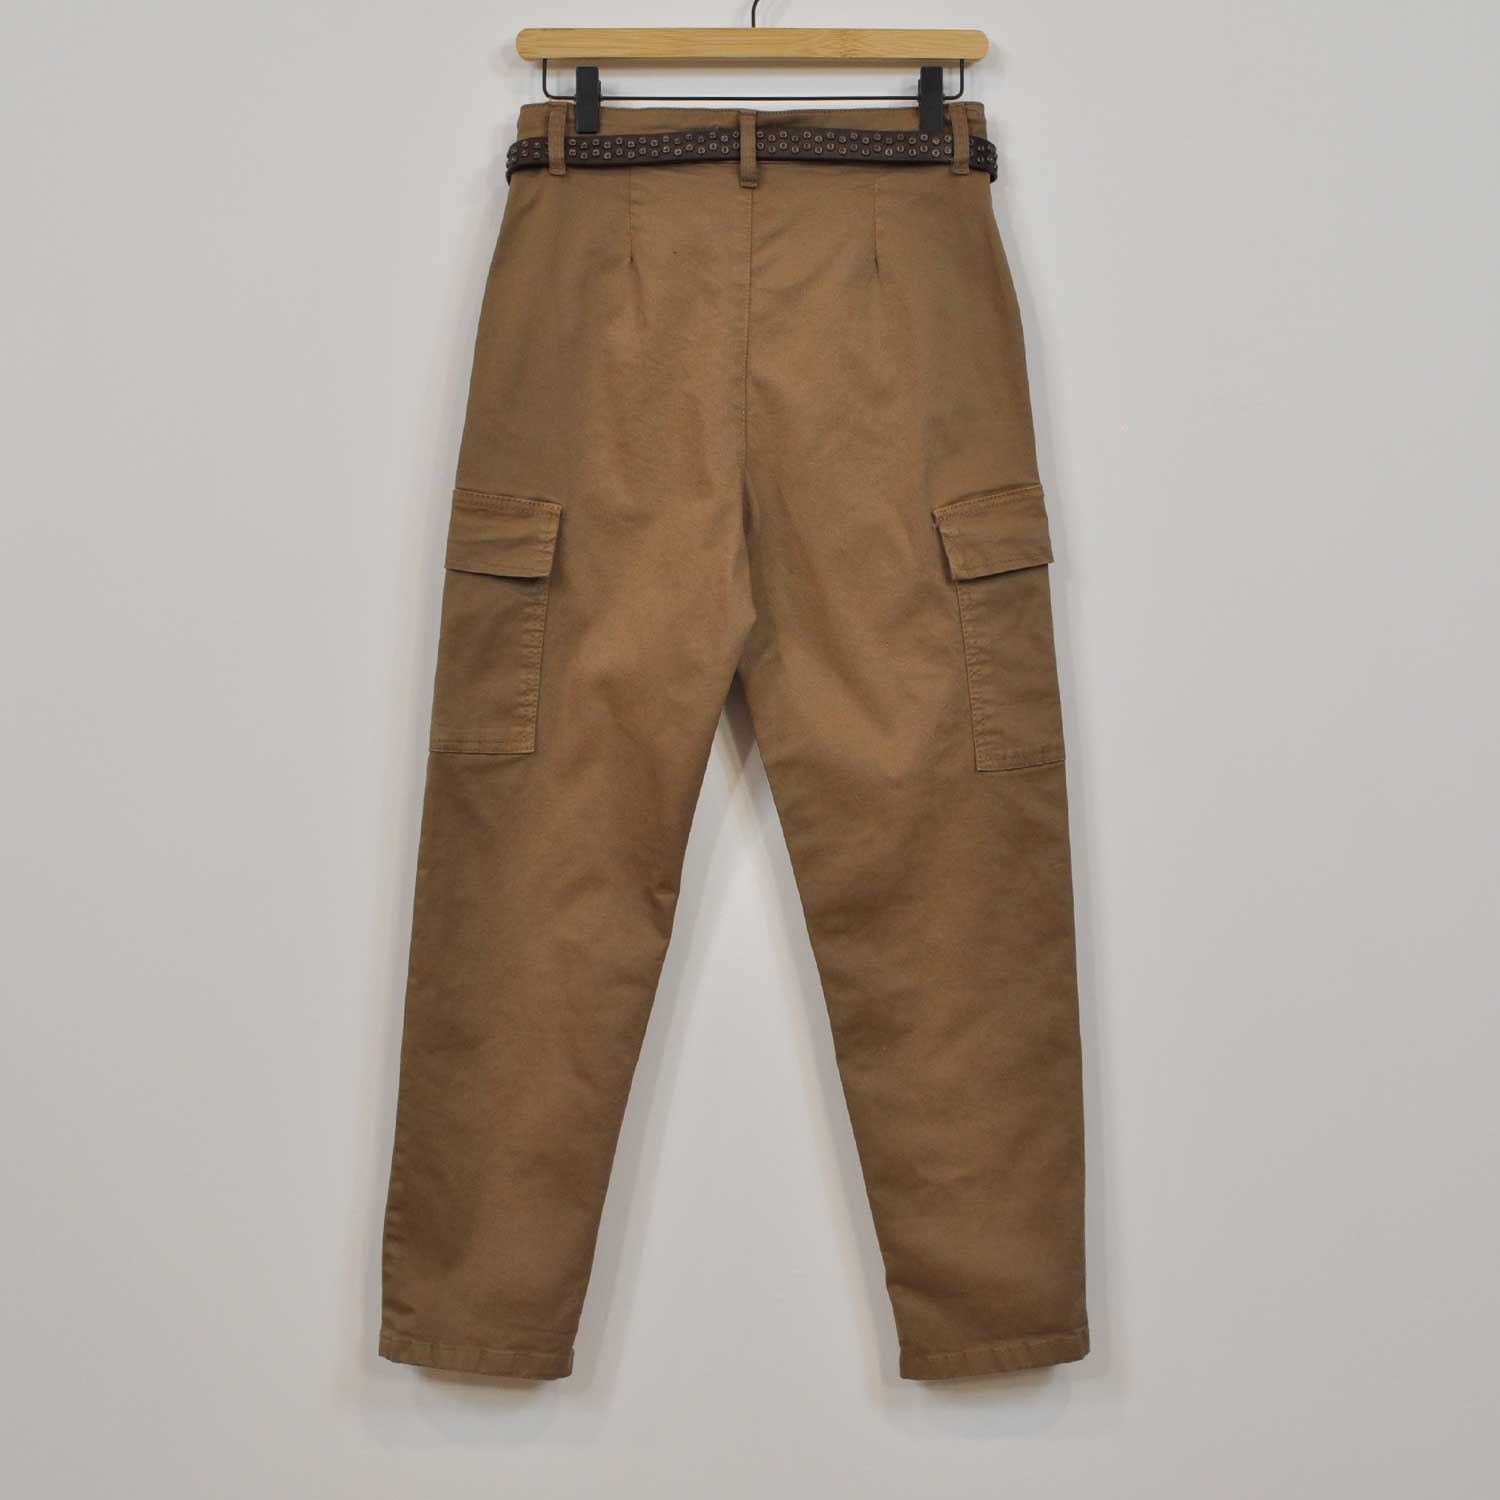 Brown belt cargo pants